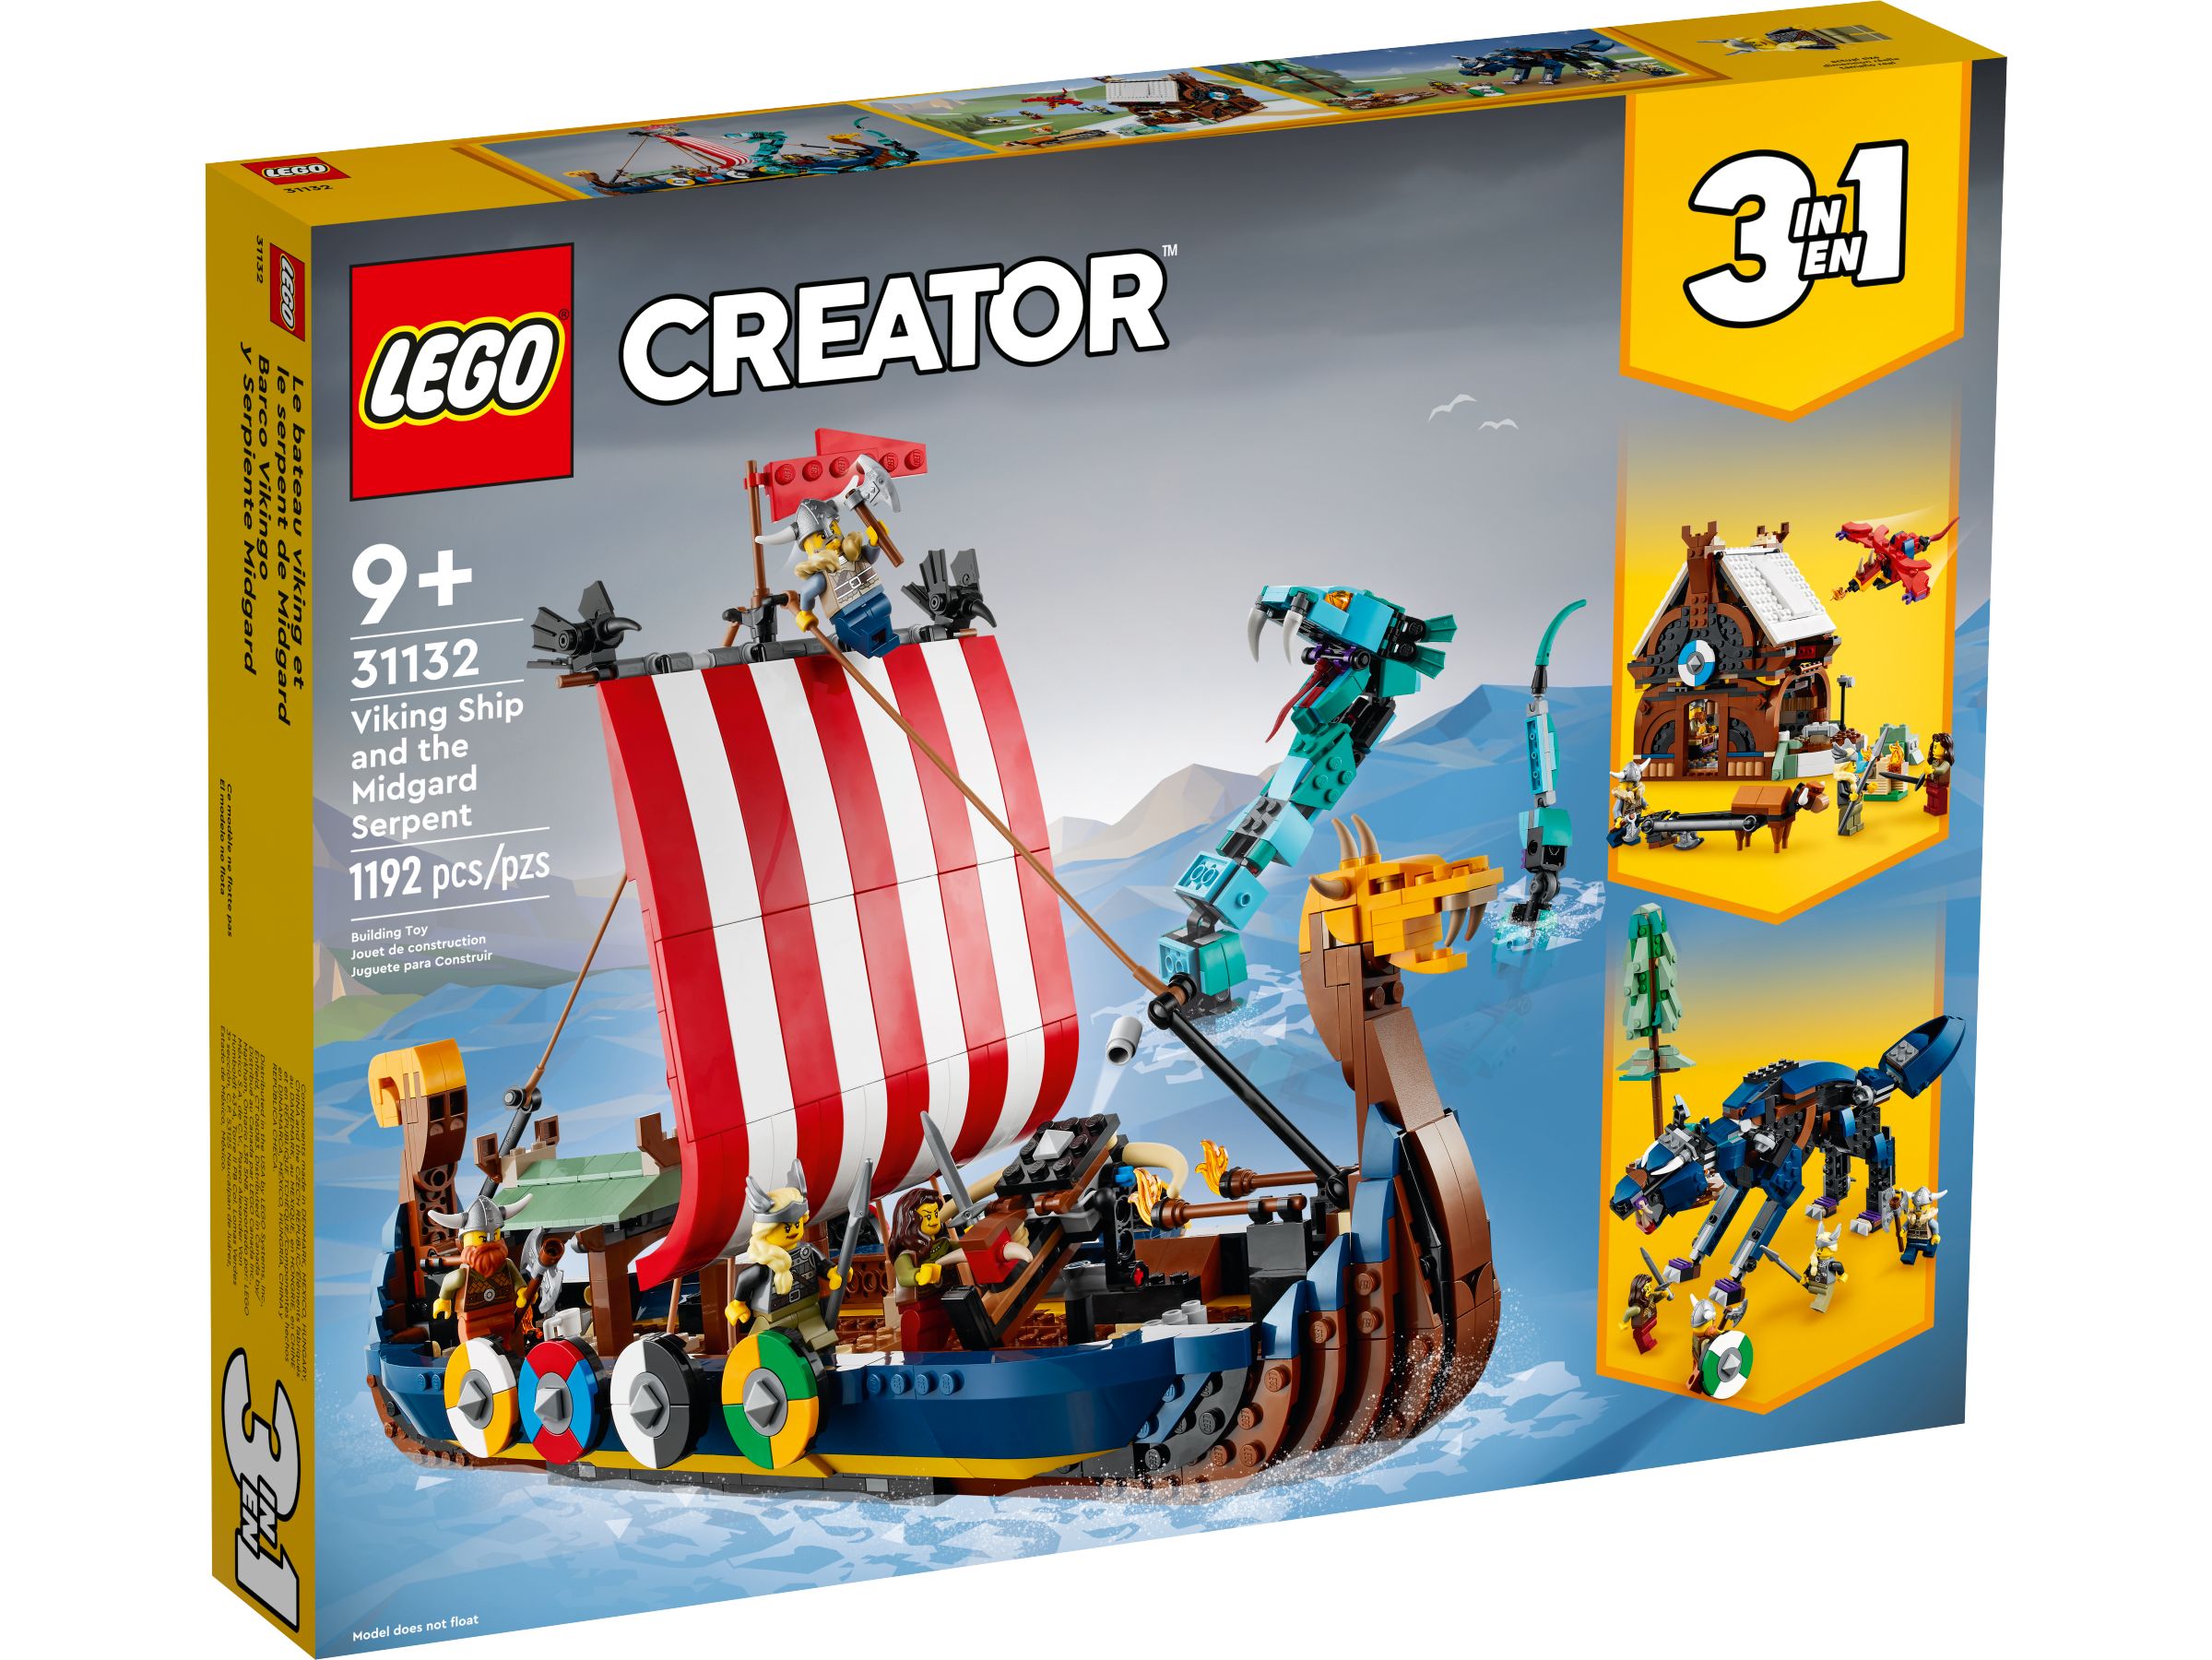 LEGO Creator 31132 Wikingerschiff mit Midgardschlange LEGO_31132_alt1.jpg